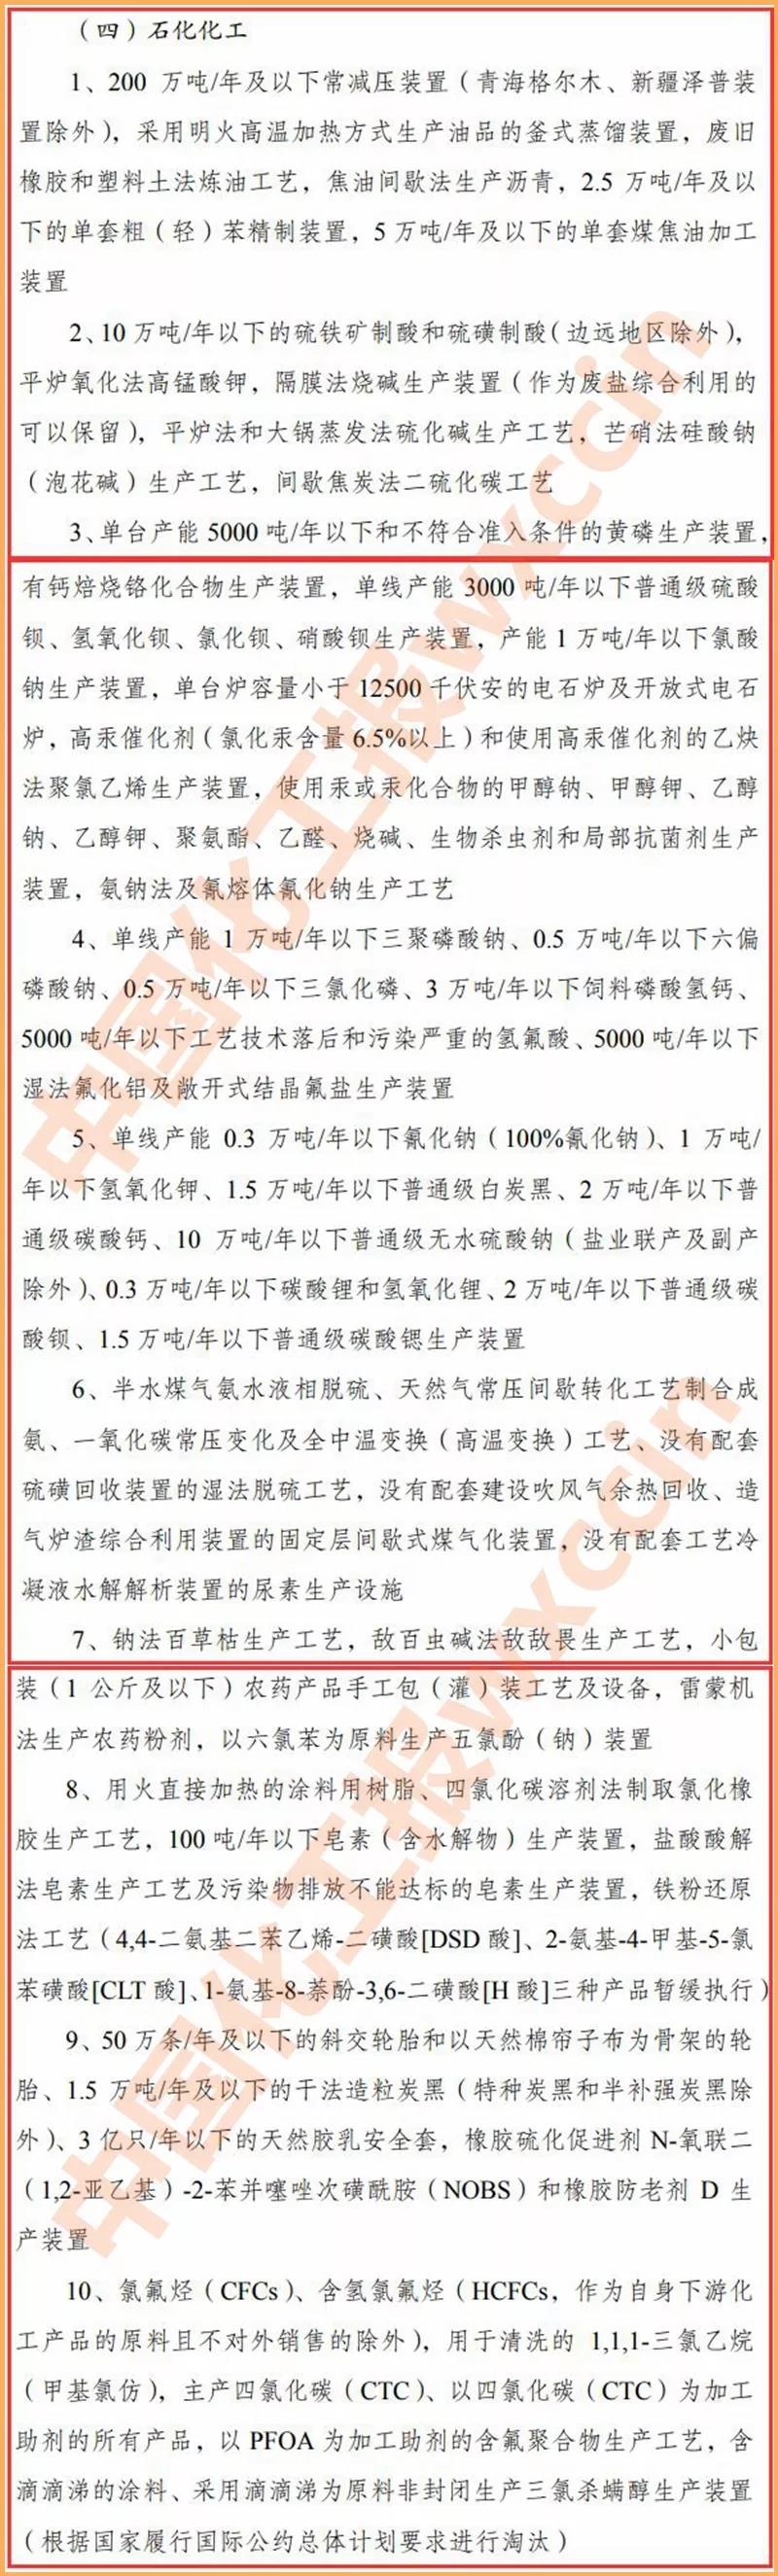 新宝gg创立事业官方登录入口(中国游)官方网站